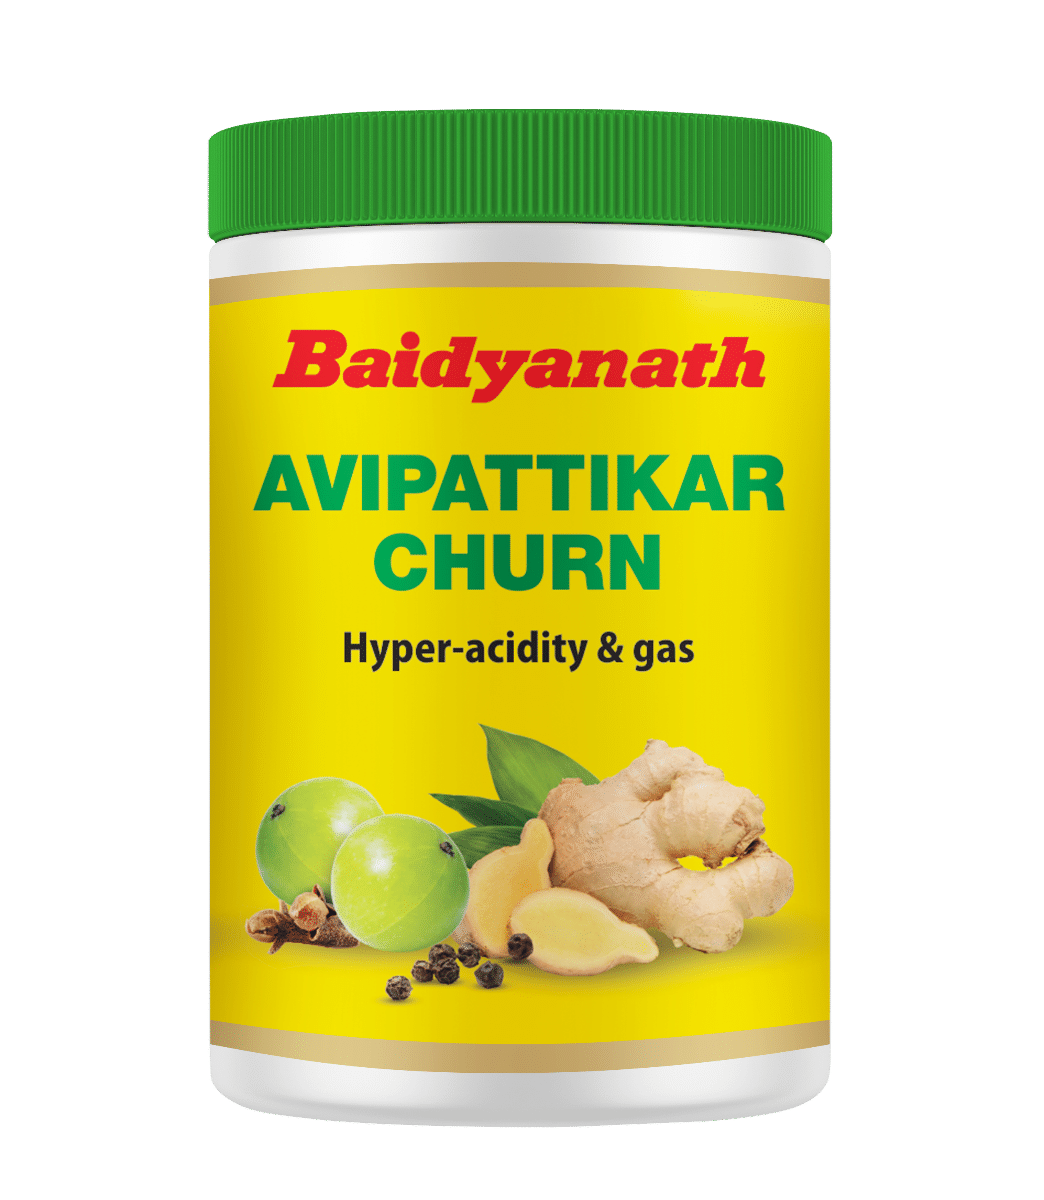 Baidyanath Avipattikar Churn, 120 gm, Pack of 1 